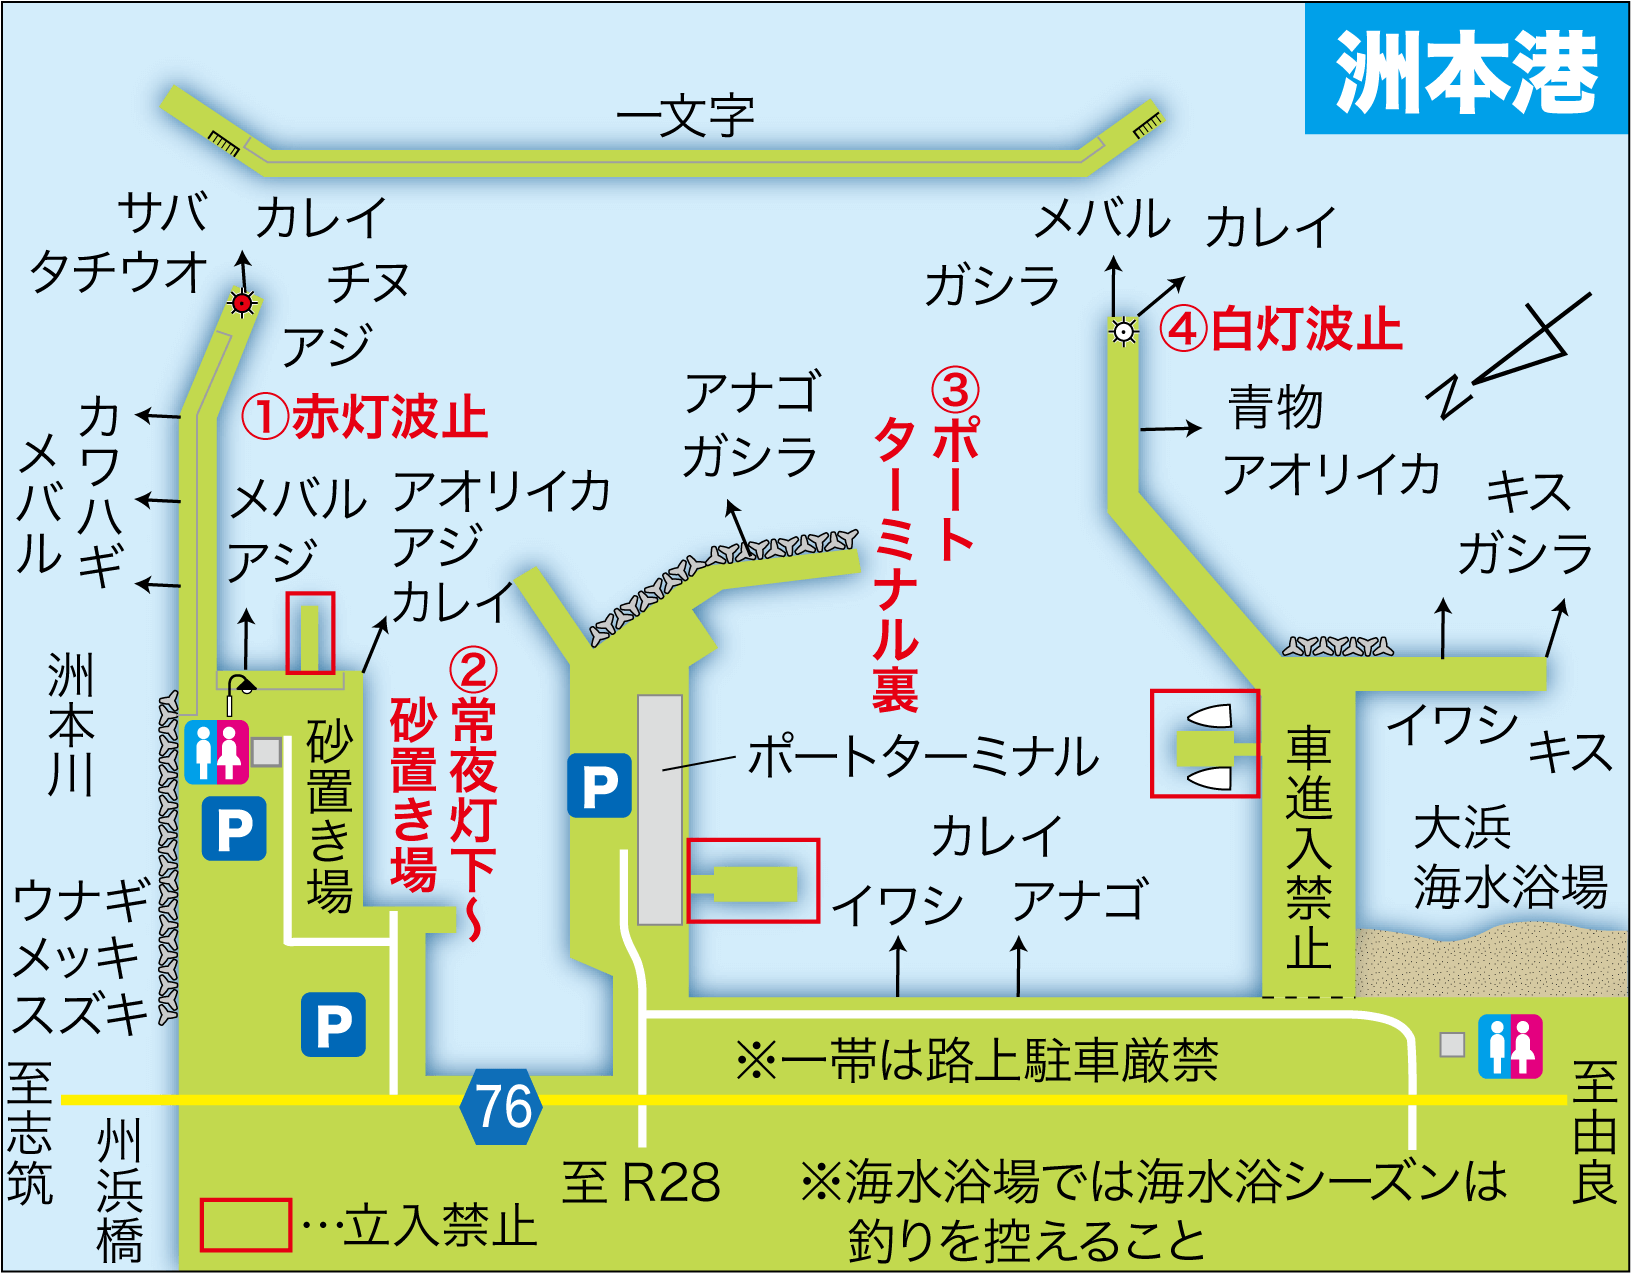 オンラインショッピング 釣り 淡路島 マップ ガイド 釣り場